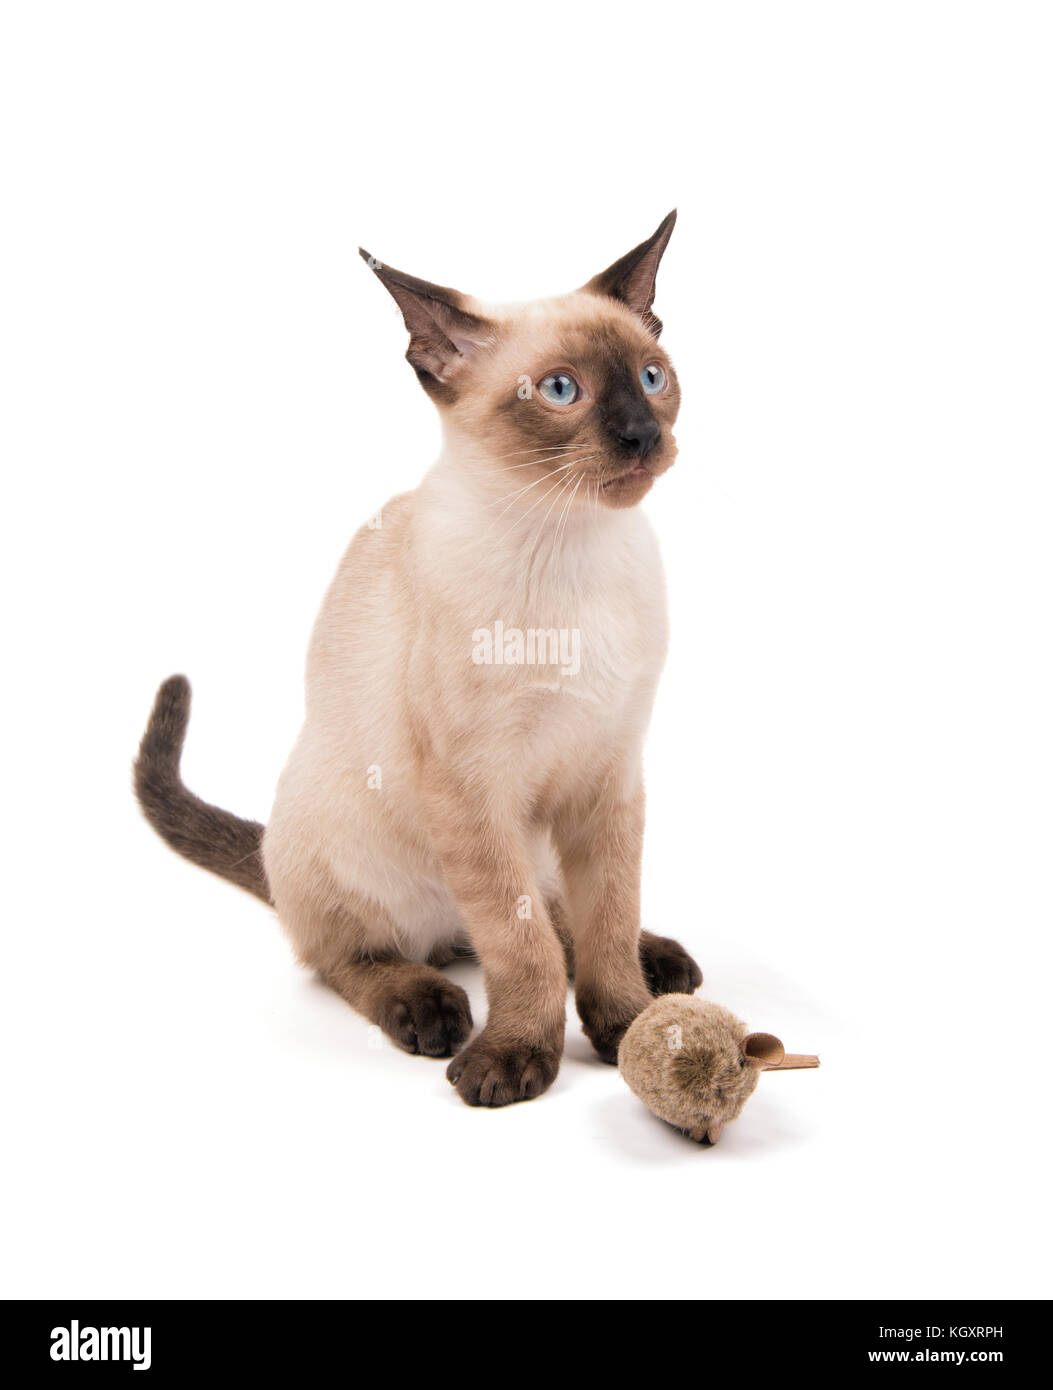 Junge siamesische Katze sitzend mit einem Spielzeug suchen, Weiß Stockfoto